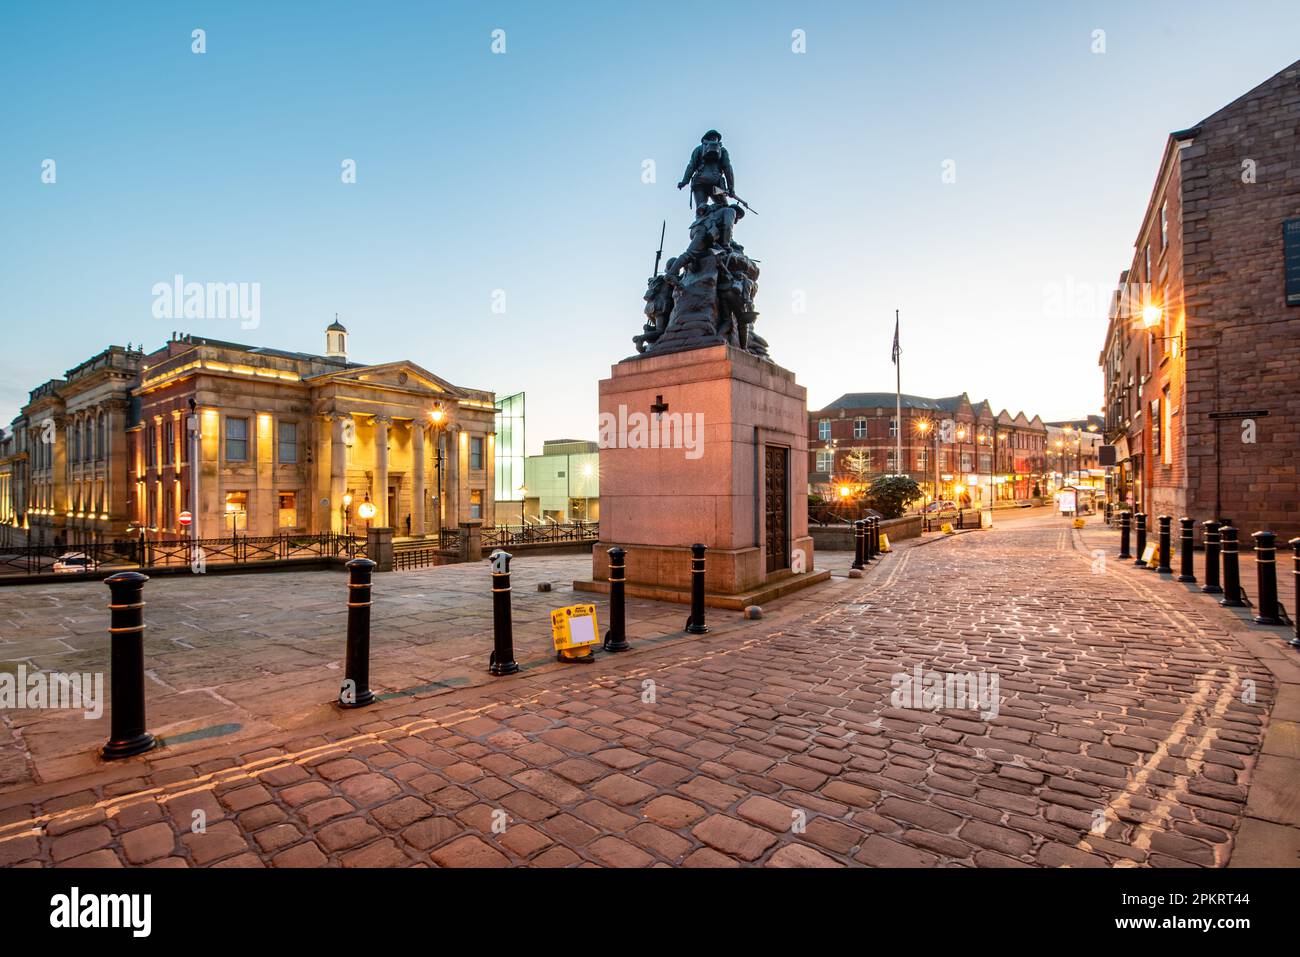 Beleuchteter Blick auf das Rathaus in einer Yorkshire Street mit war Memorial Sculpture in Oldham City, Großbritannien Stockfoto